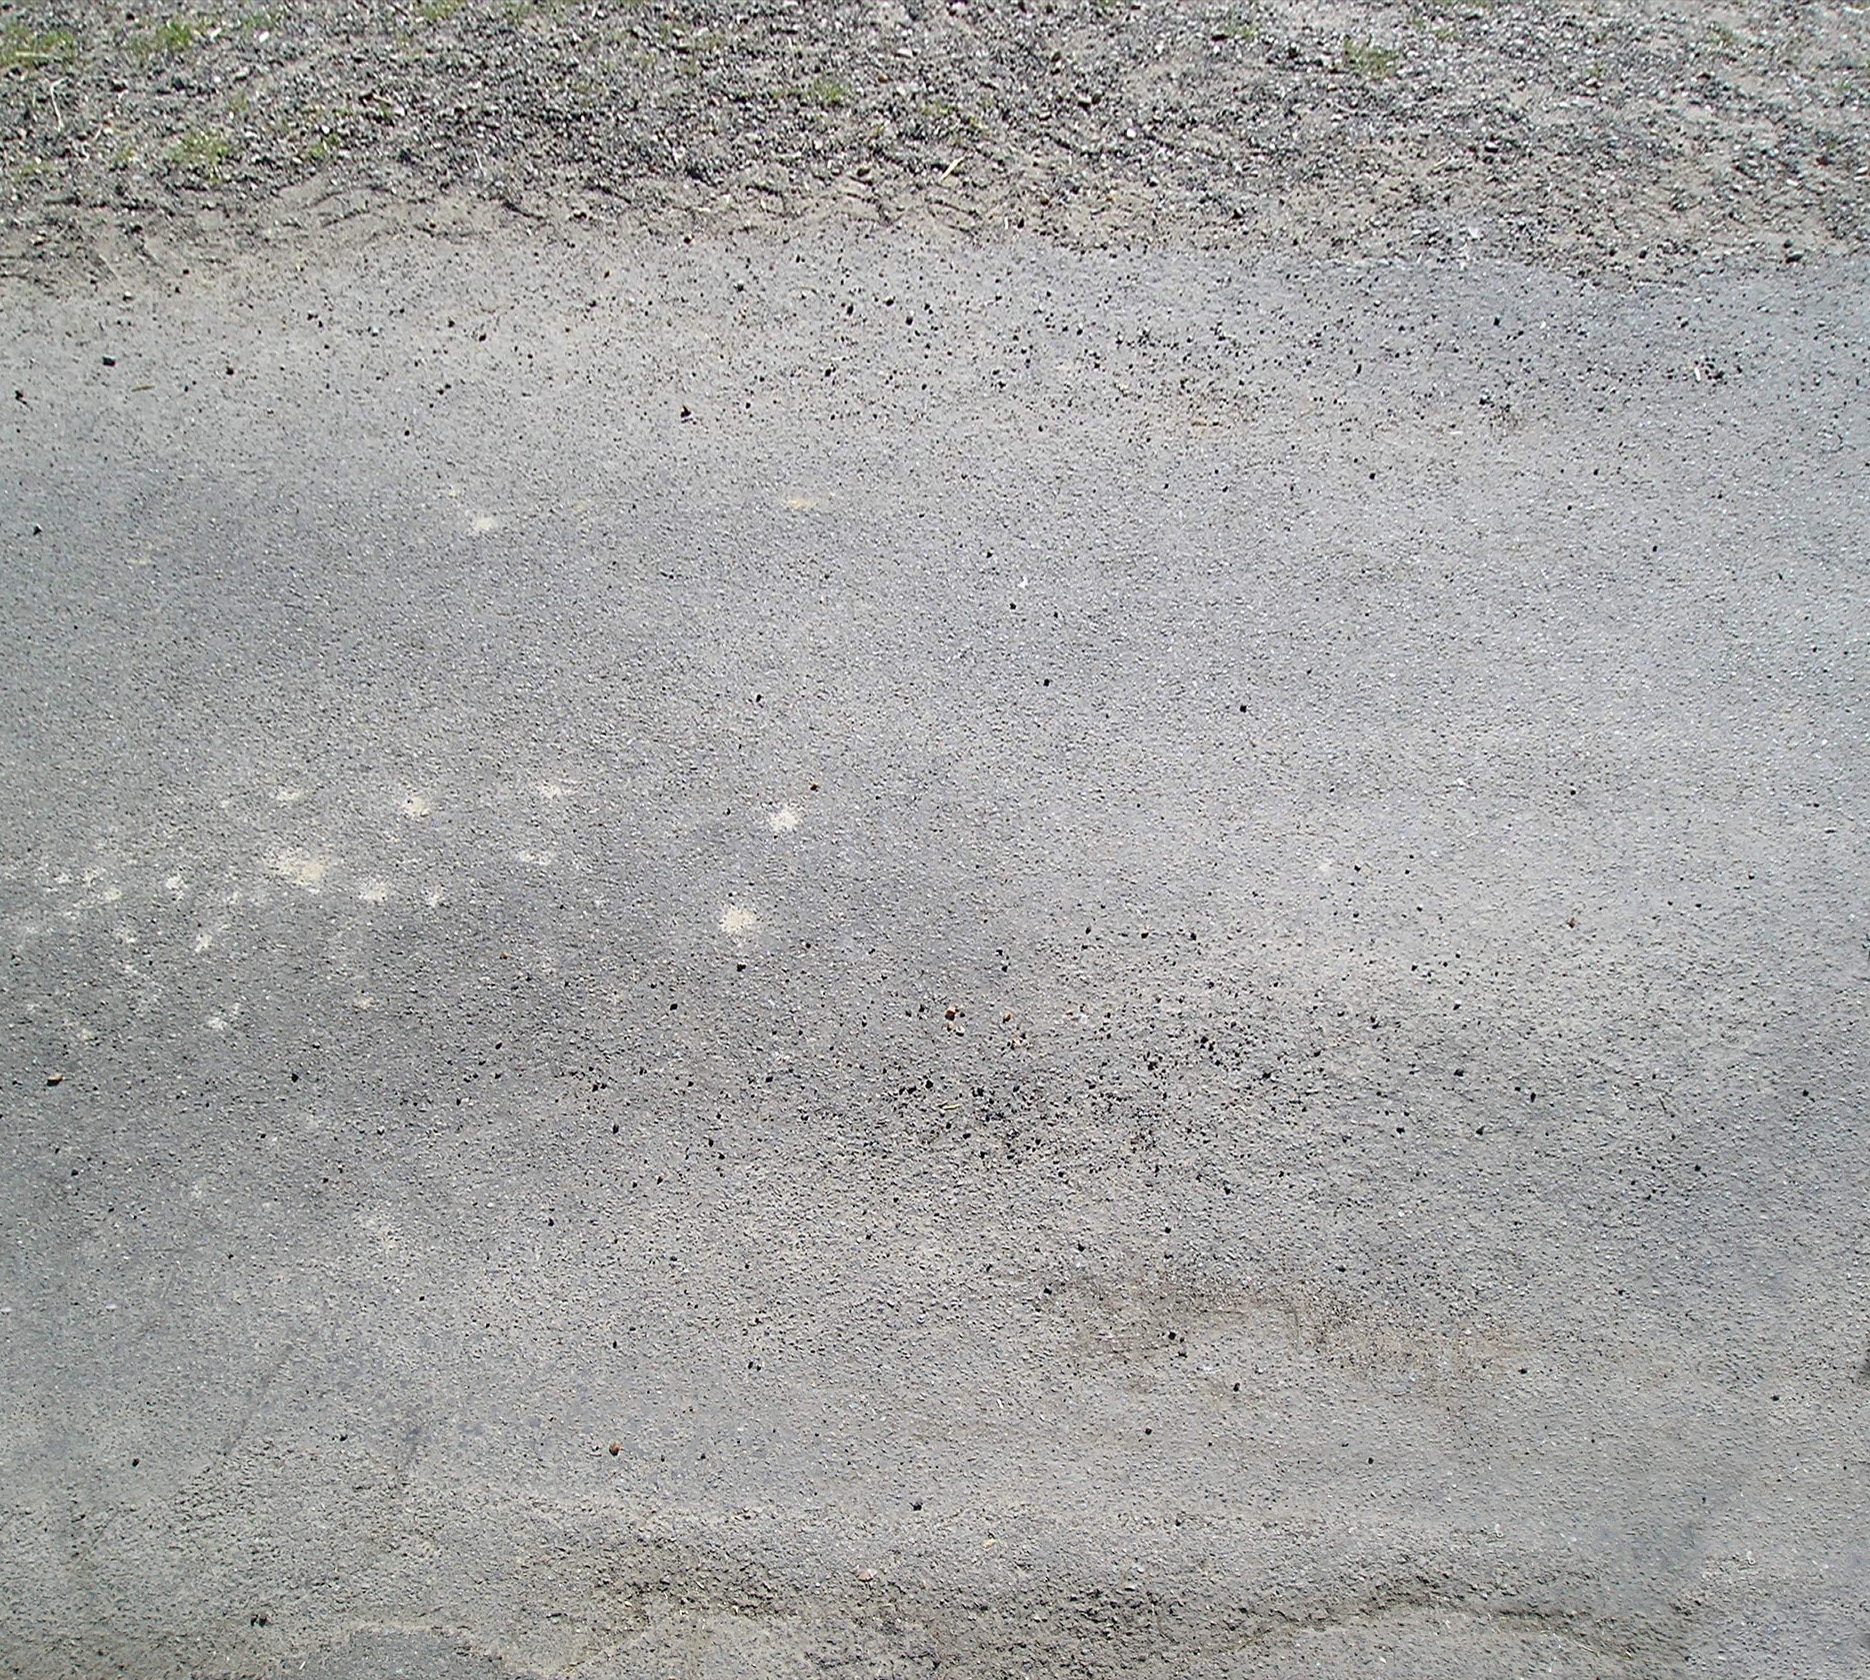 Gray asphalt texture background